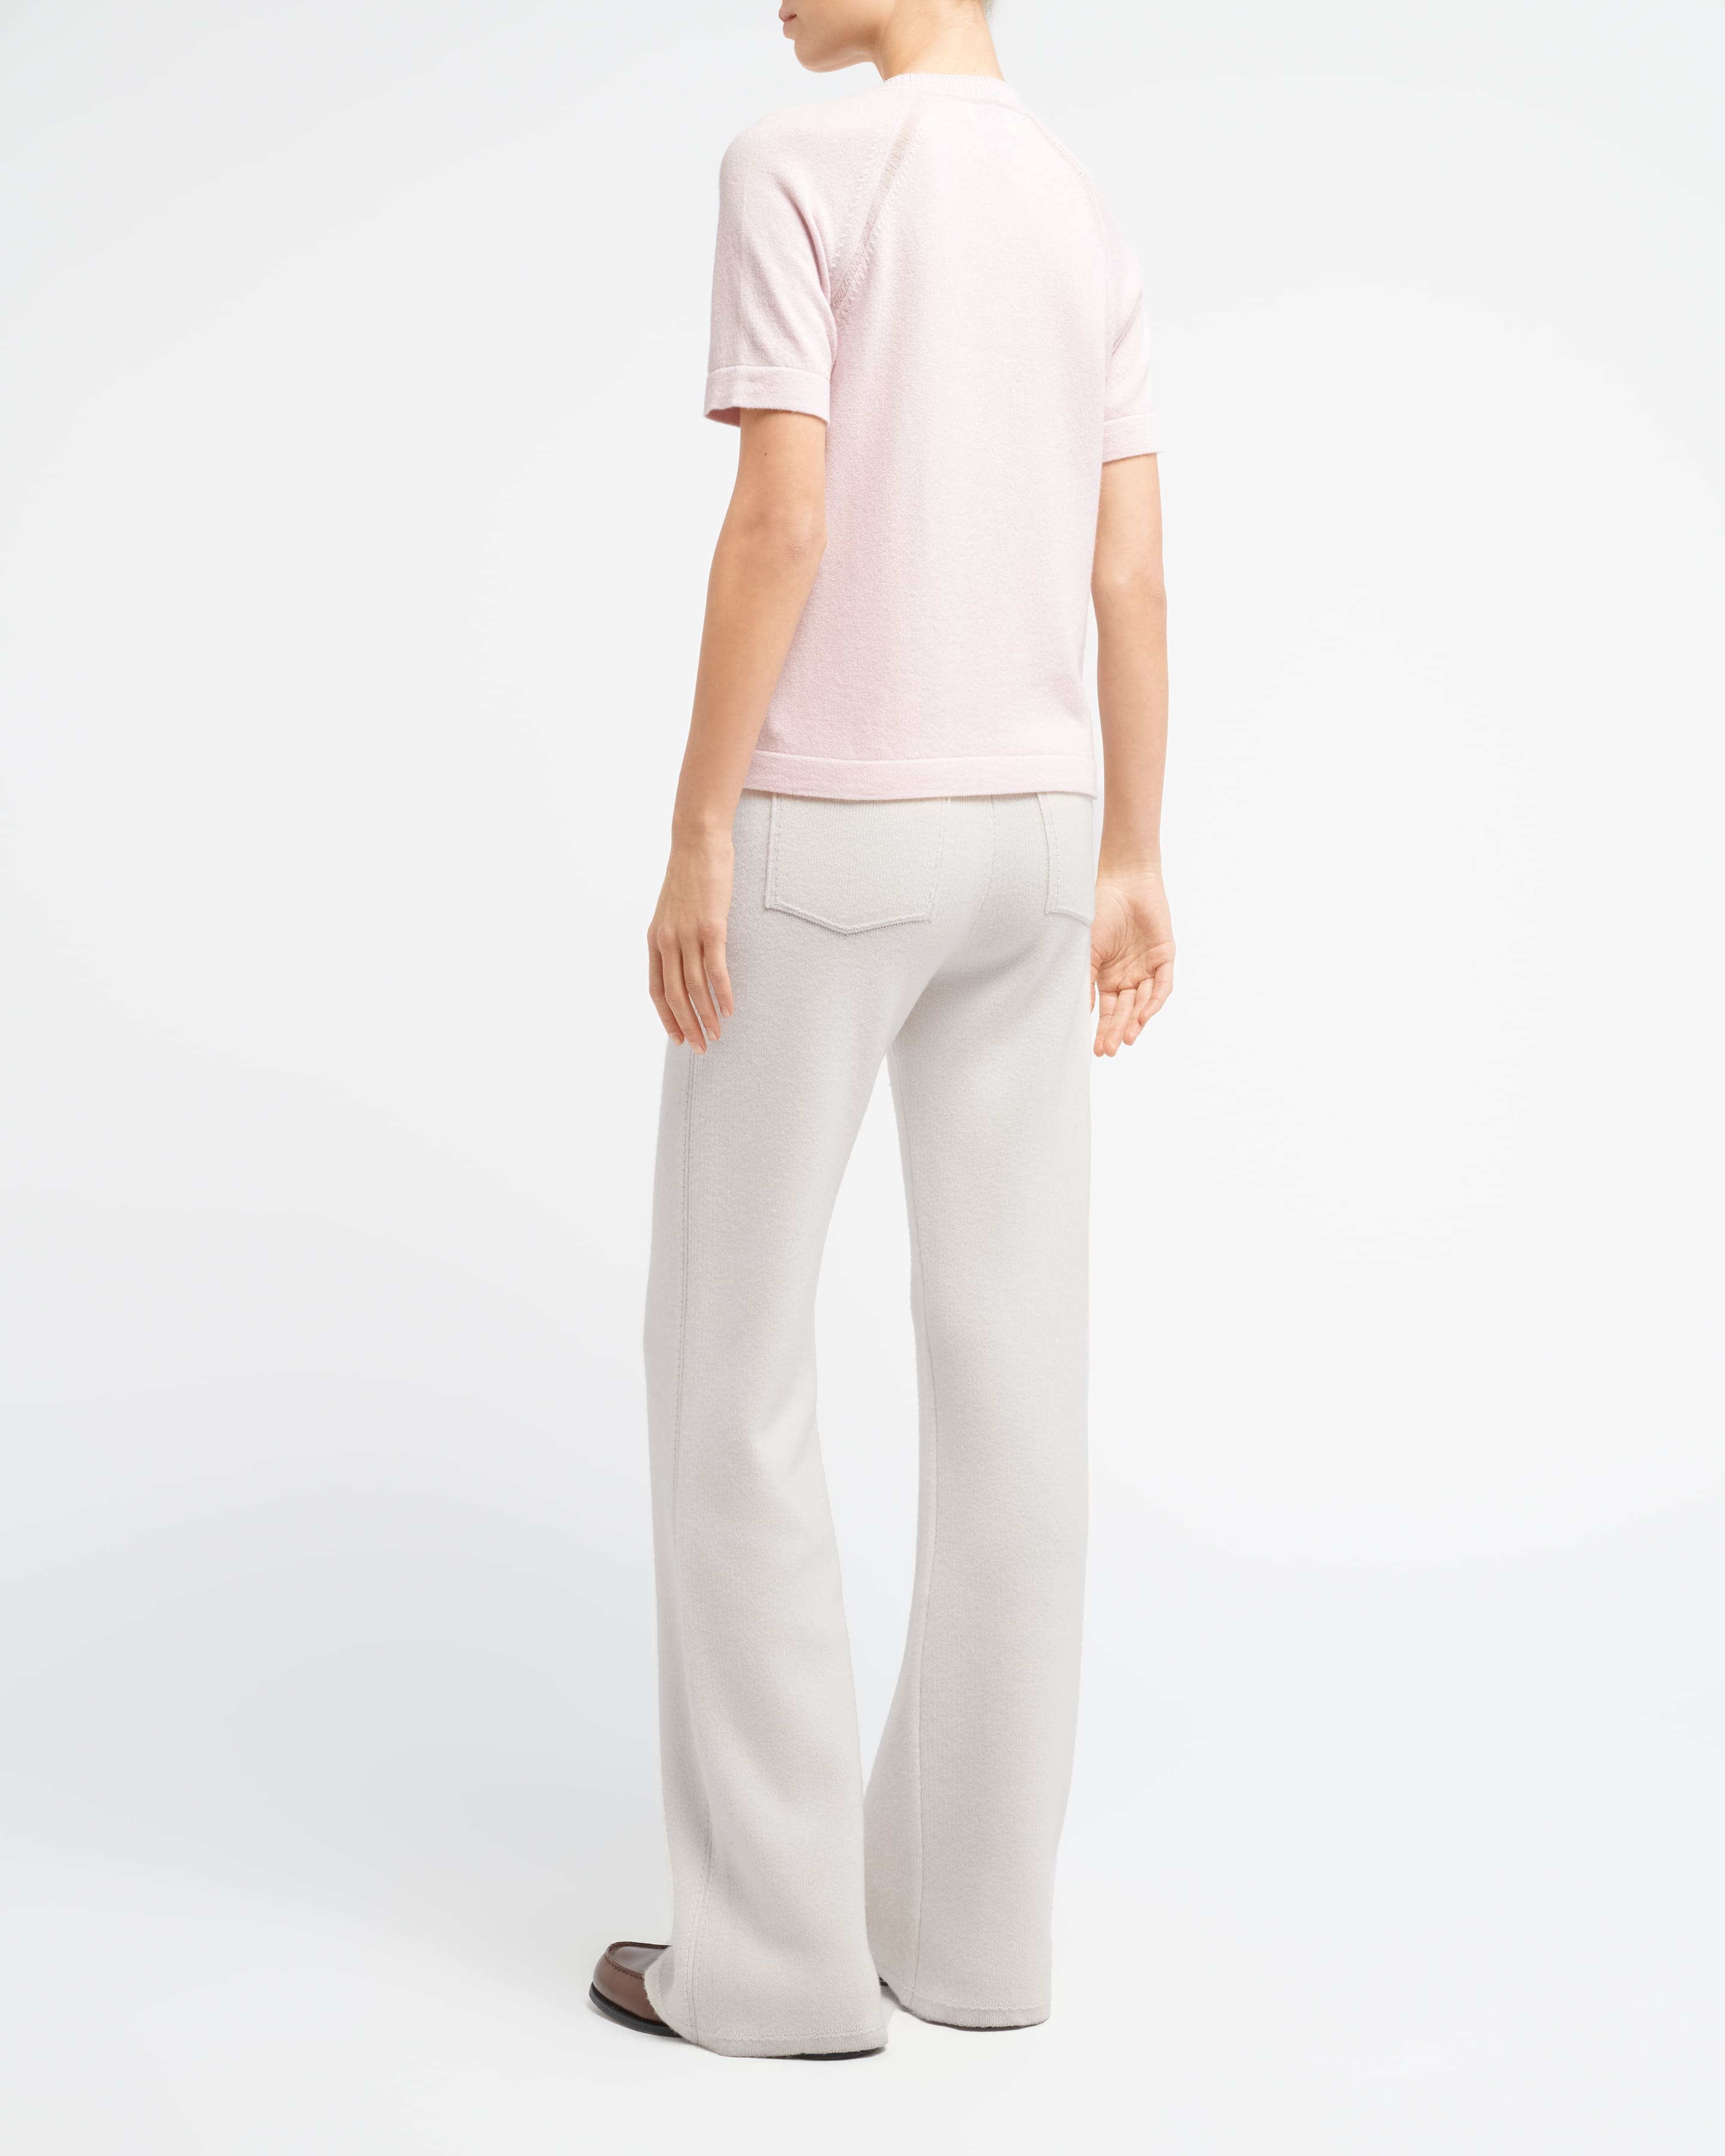 Barrie cashmere short-sleeved top - Orange